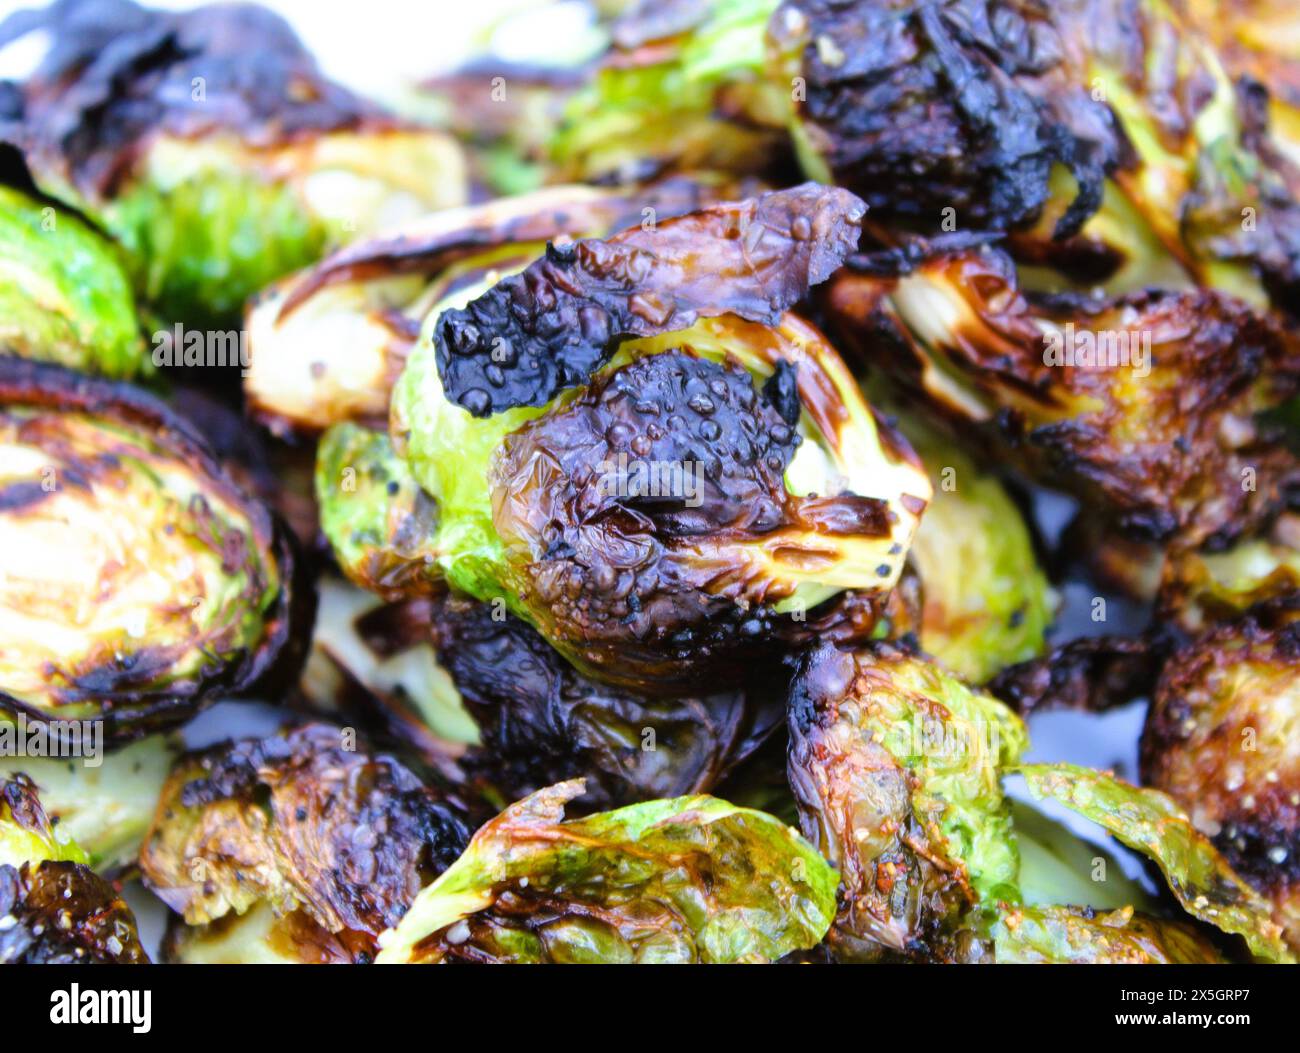 Germogli di Bruxelles alla griglia, verdure affumicate, cibo cucinato, blog sul cibo Foto Stock